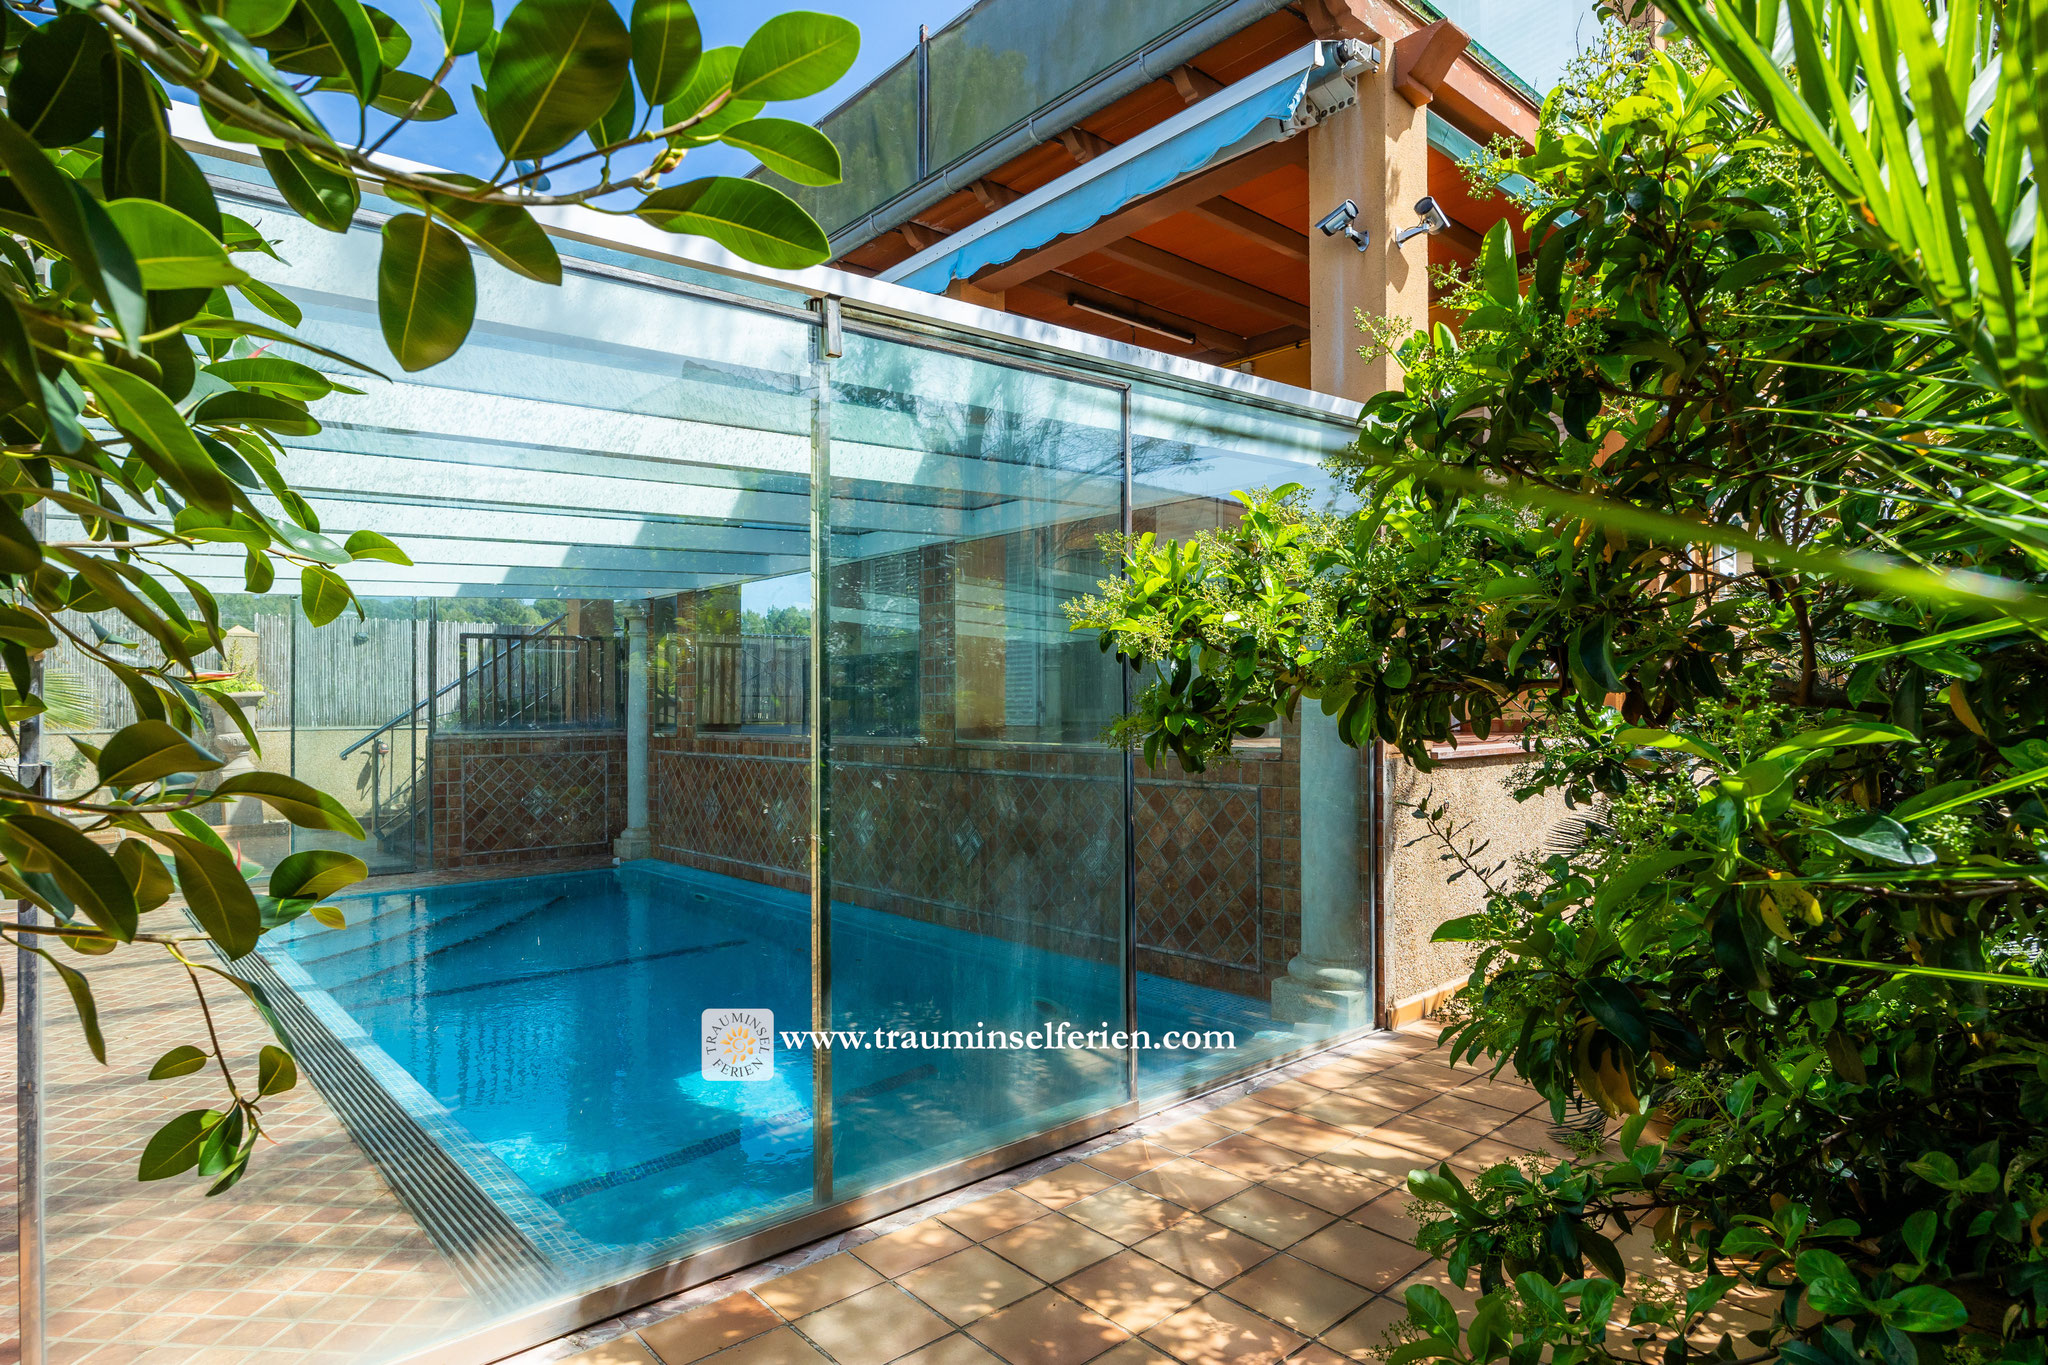 Sale: Luxury villa with heatable pool